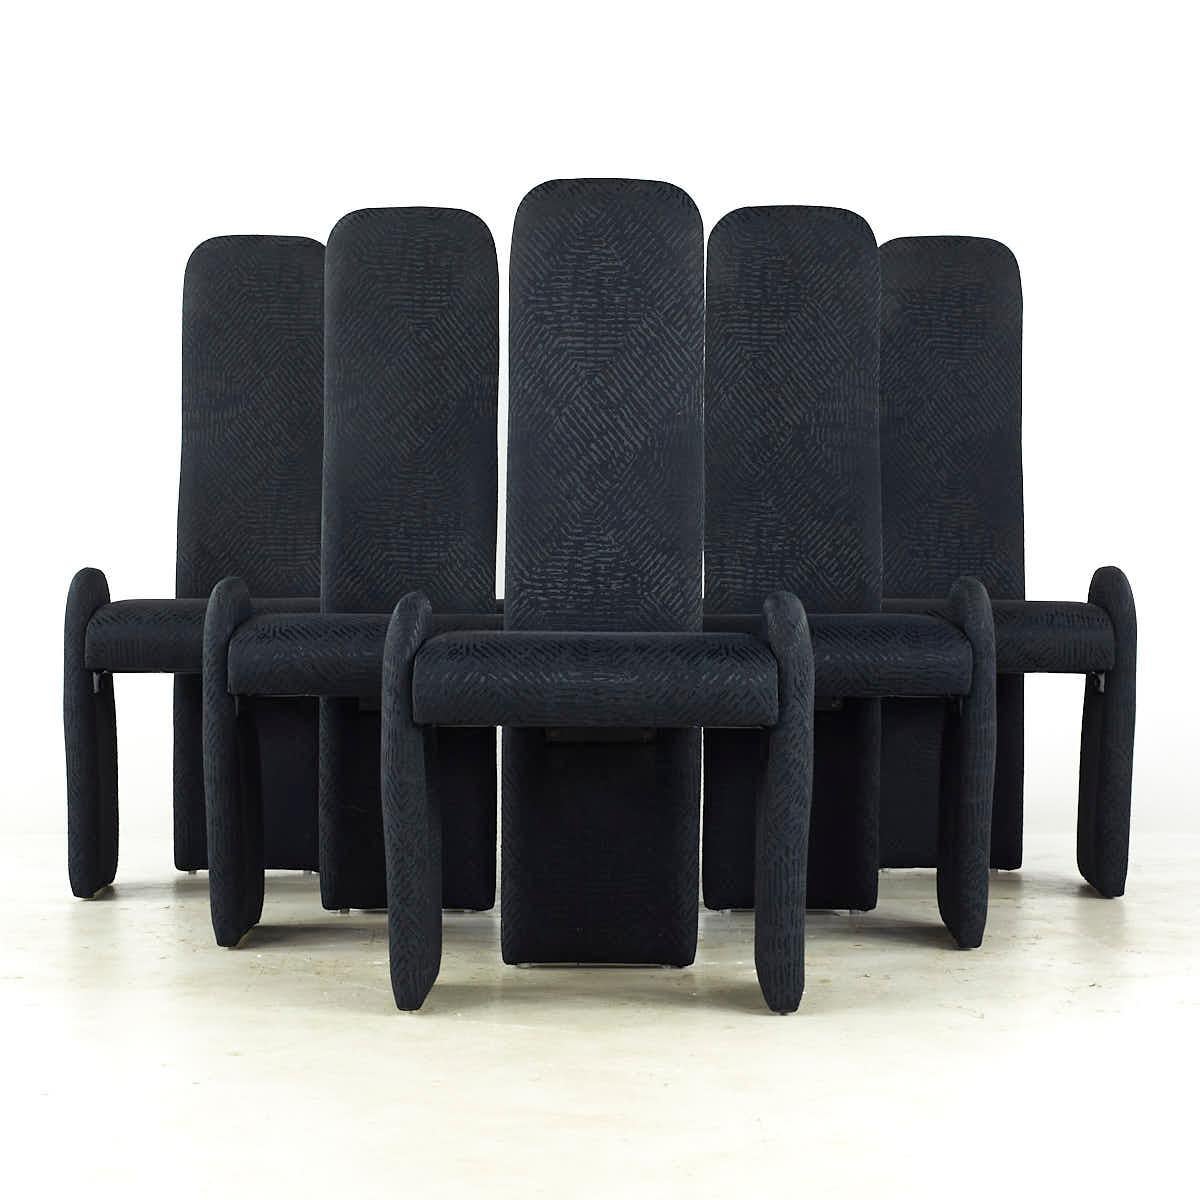 Pierre Cardin Mid Century Armless Dining Chairs - Set of 6

Chaque chaise mesure : 21,75 de large x 22 de profond x 43 de haut, avec une hauteur d'assise et un dégagement de 18,75 pouces.

Tous les meubles peuvent être achetés dans ce que nous